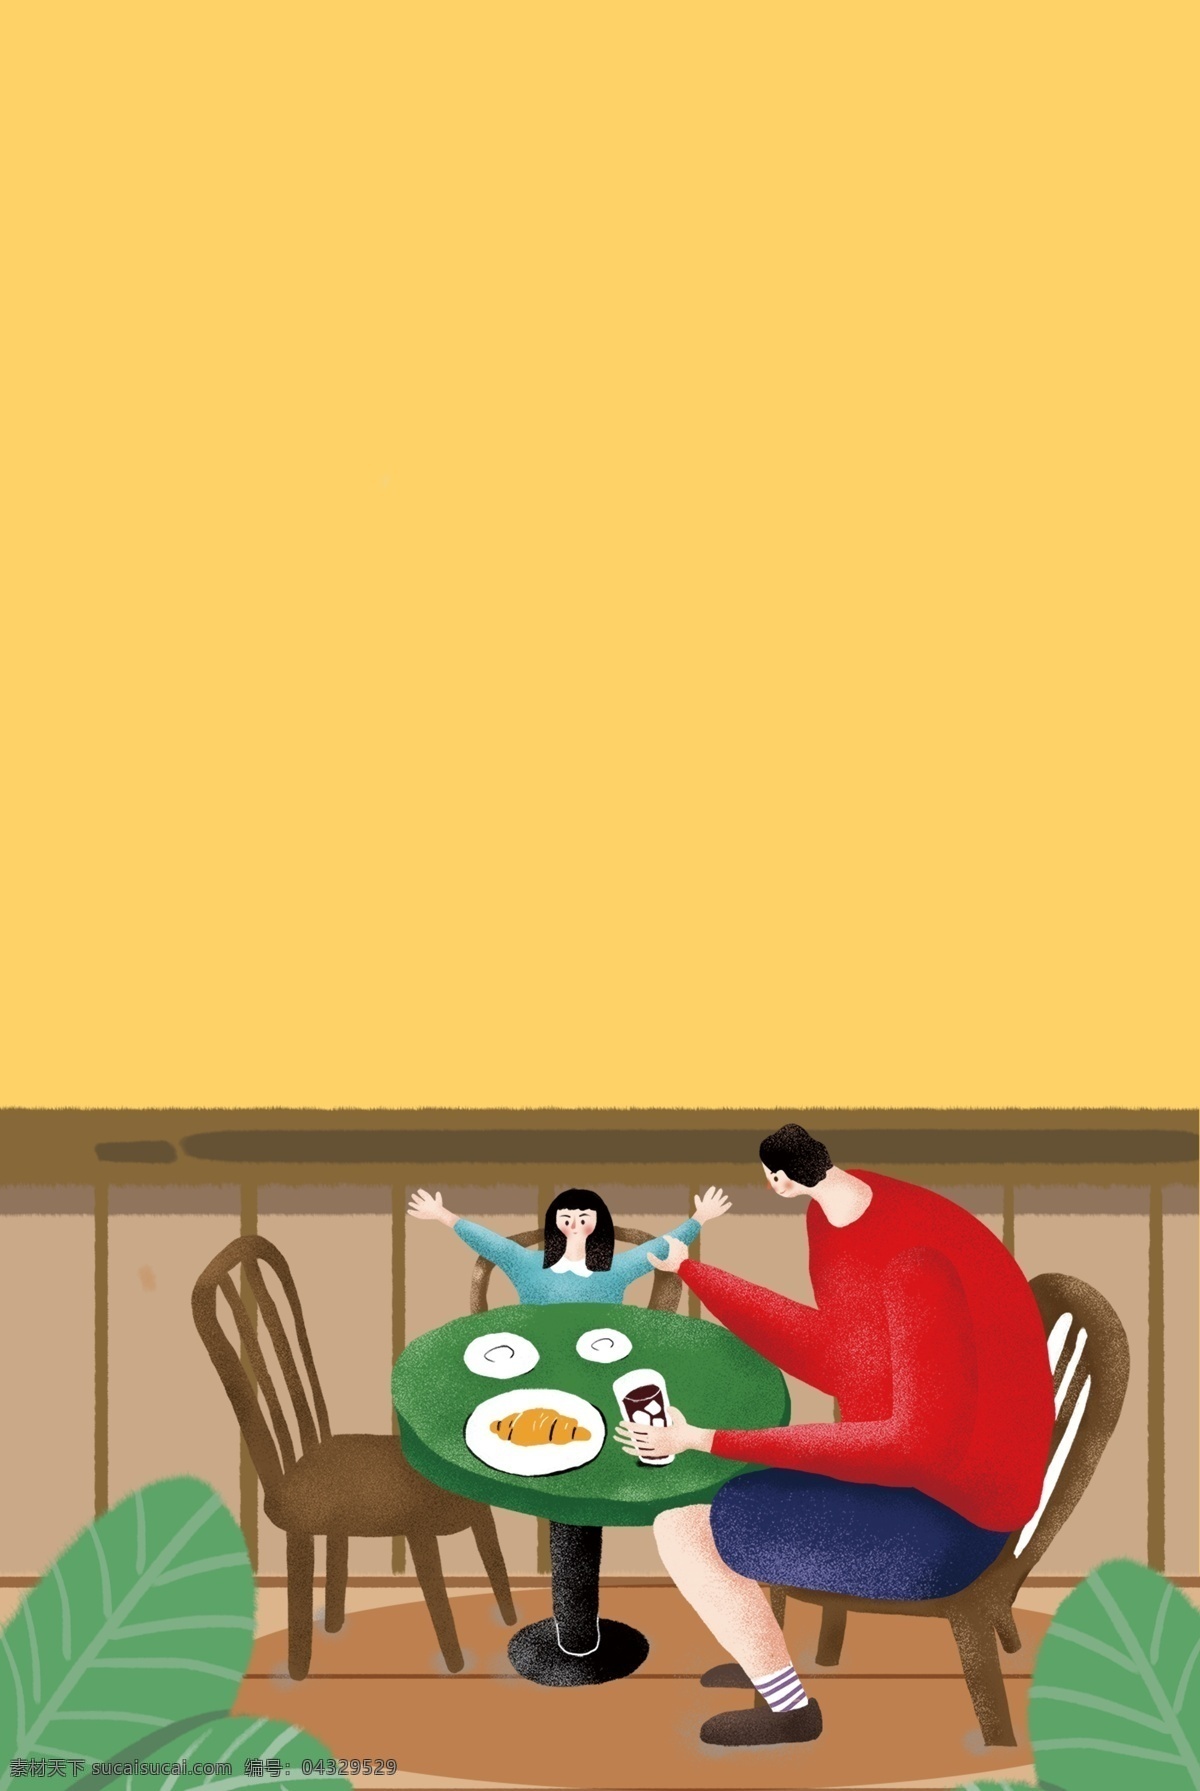 休闲 假期 父亲 陪伴 儿童 吃饭 温馨 海报 家居 人物 插画风 促销海报